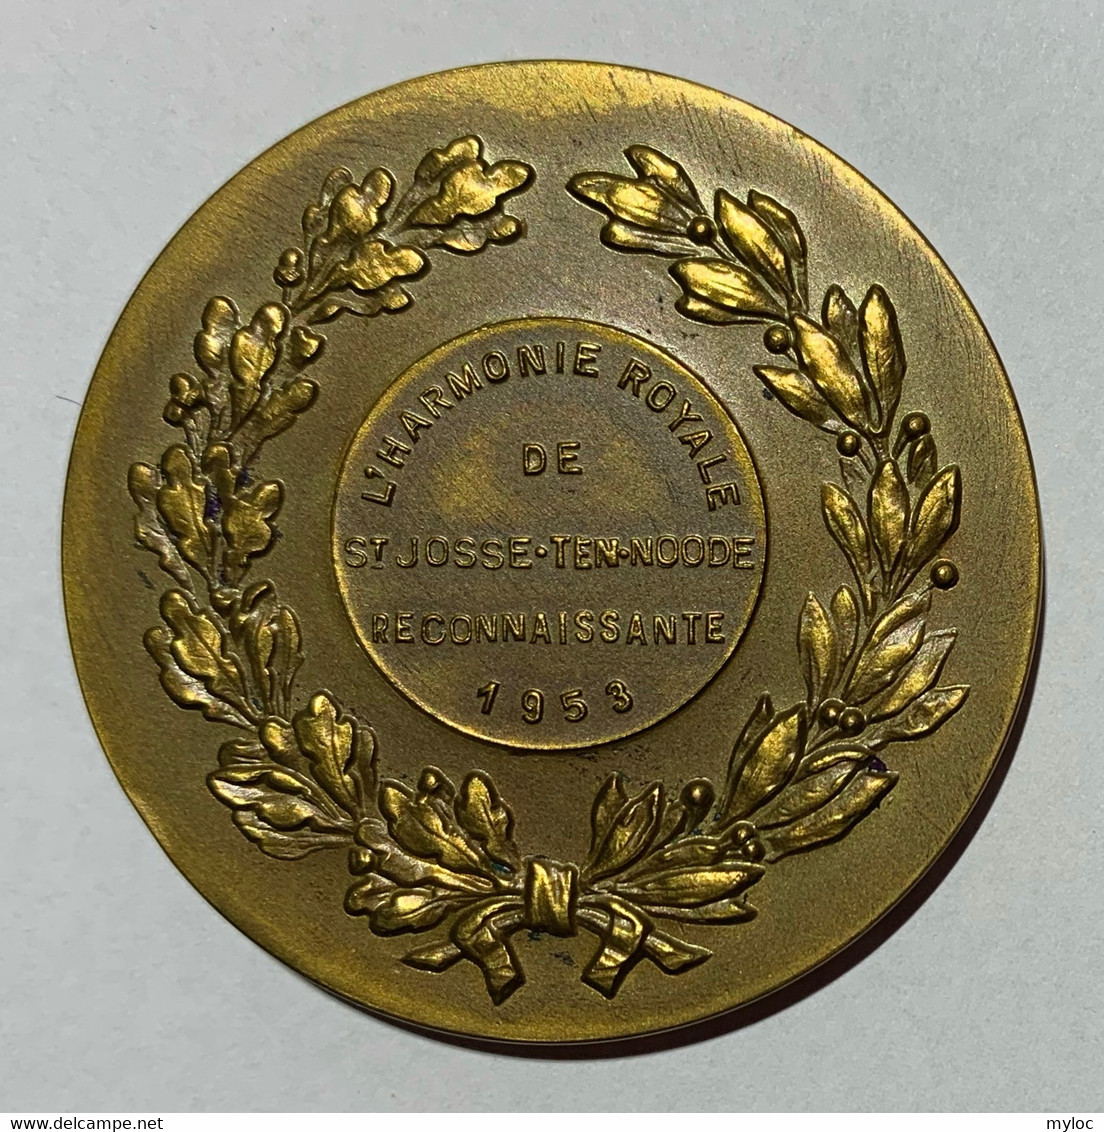 Médaille Bronze. Femme Avec Lyre. L'Harmonie Royale De Saint-Josse-Ten-Noode.  Reconnaissante 1953 - Unternehmen